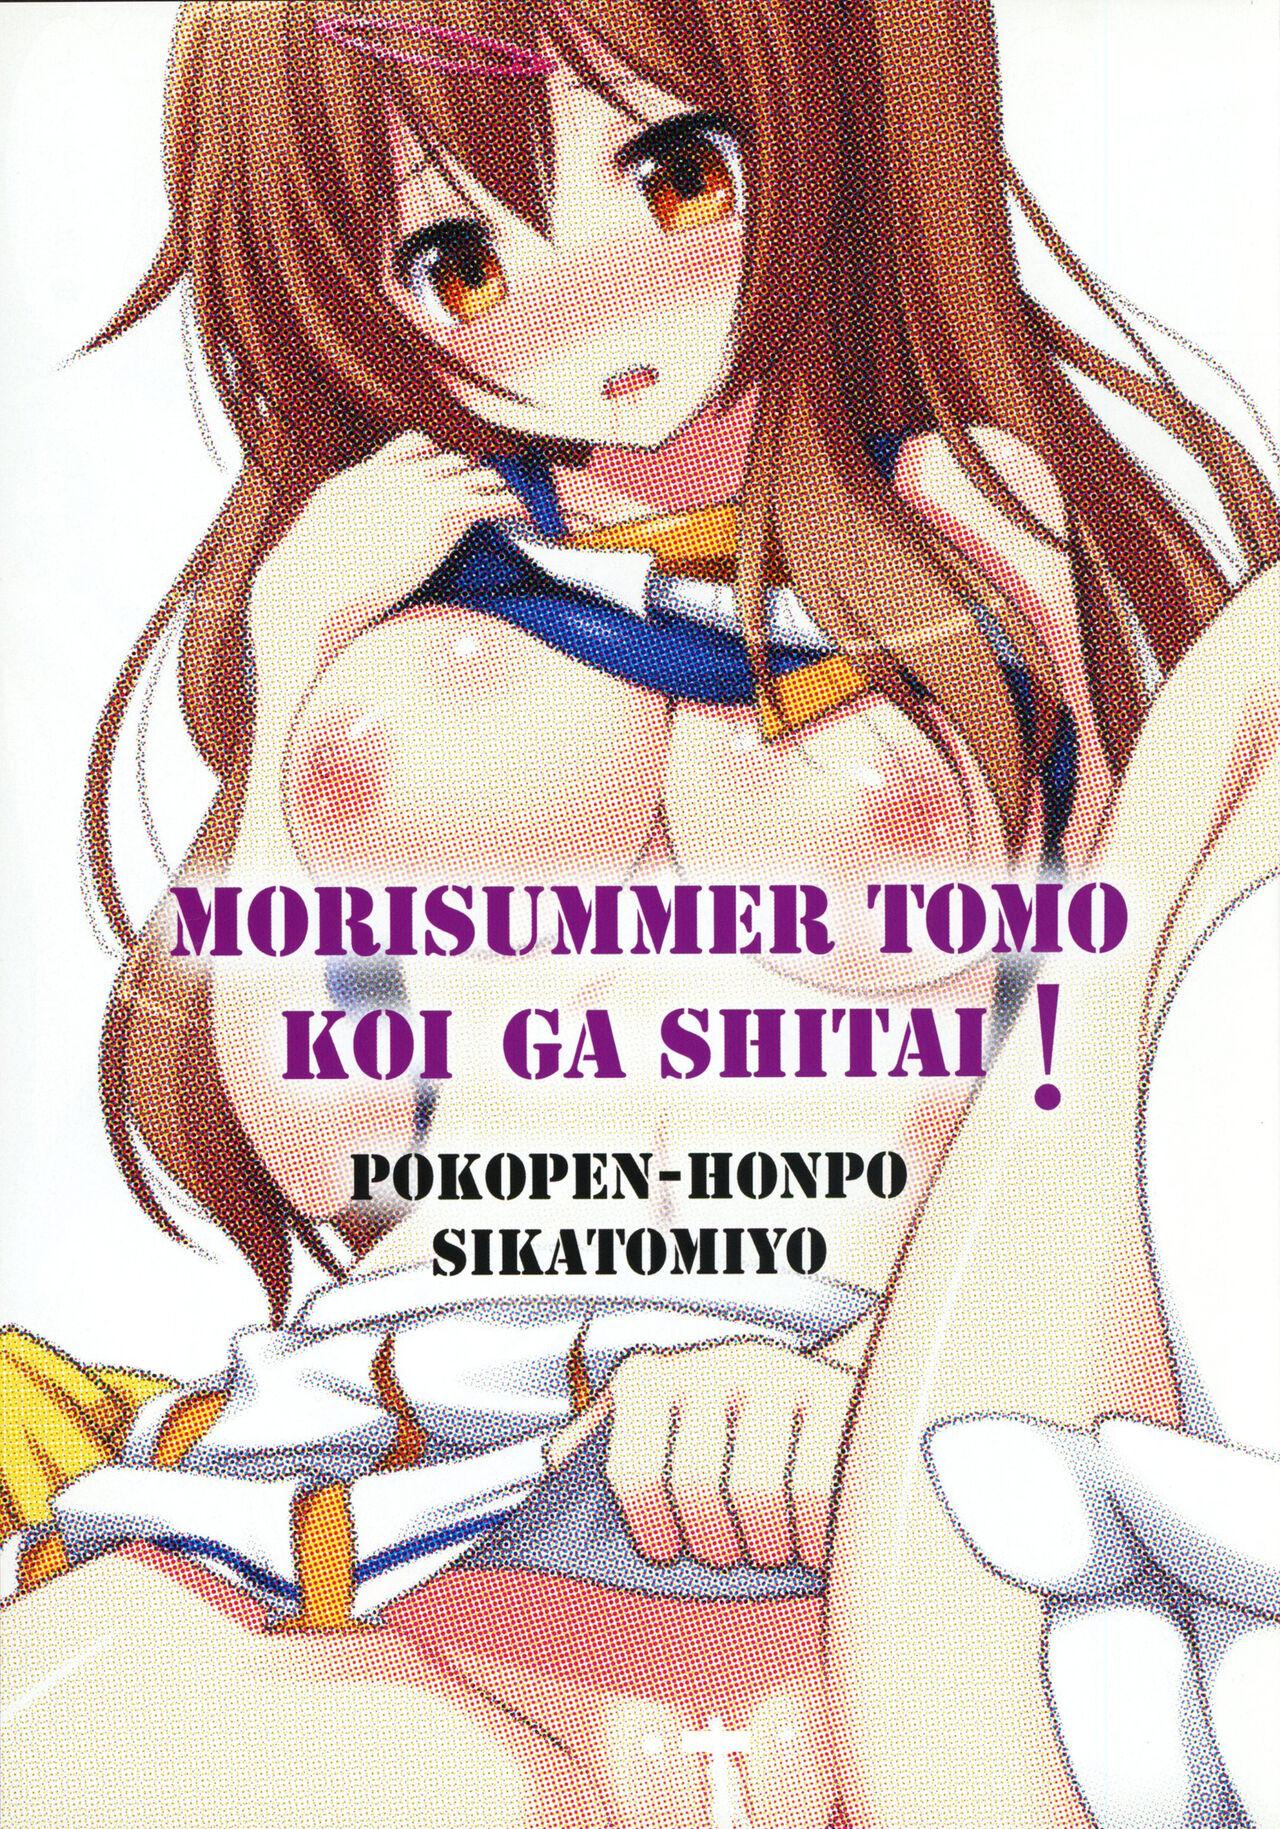 Dick MoriSummer tomo KOI ga shitai - Chuunibyou demo koi ga shitai Hot Whores - Page 2